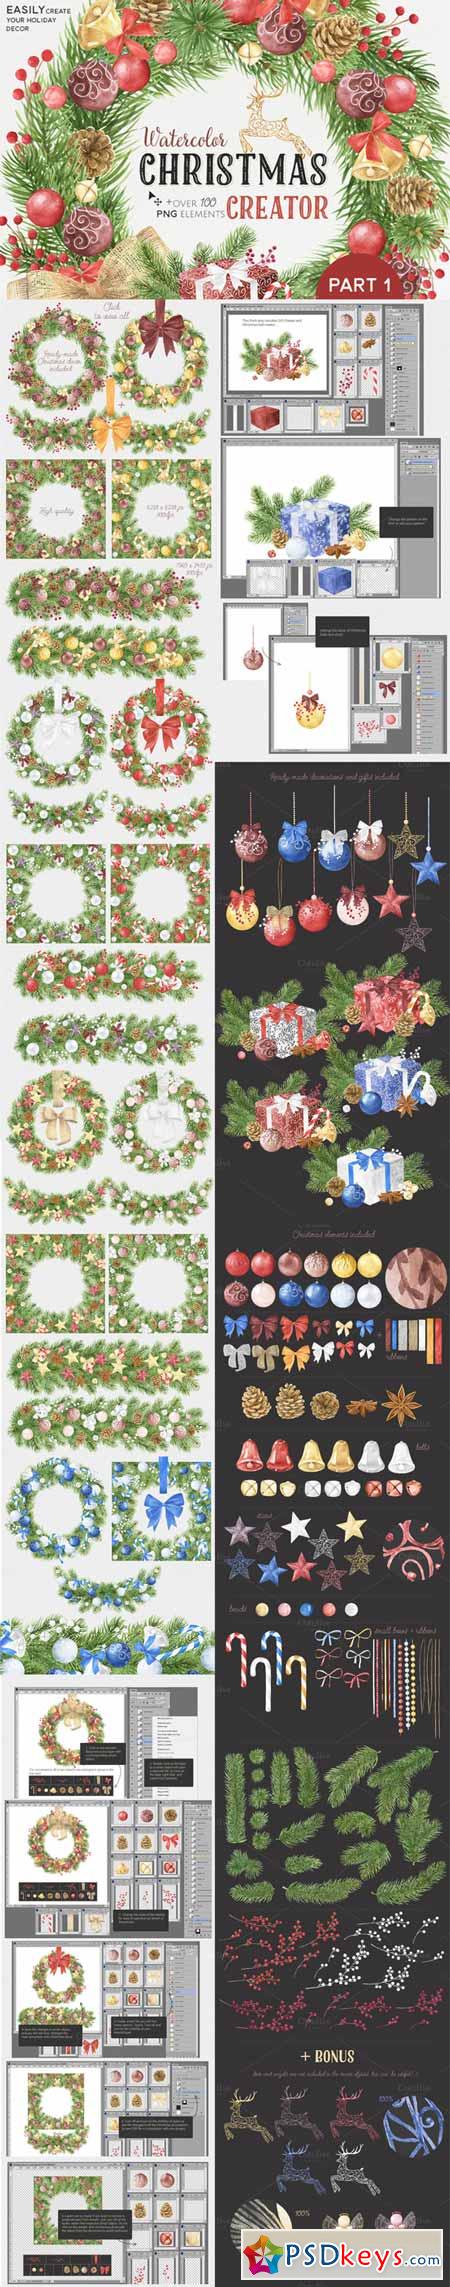 Watercolor Christmas Creator Pack #1 443292